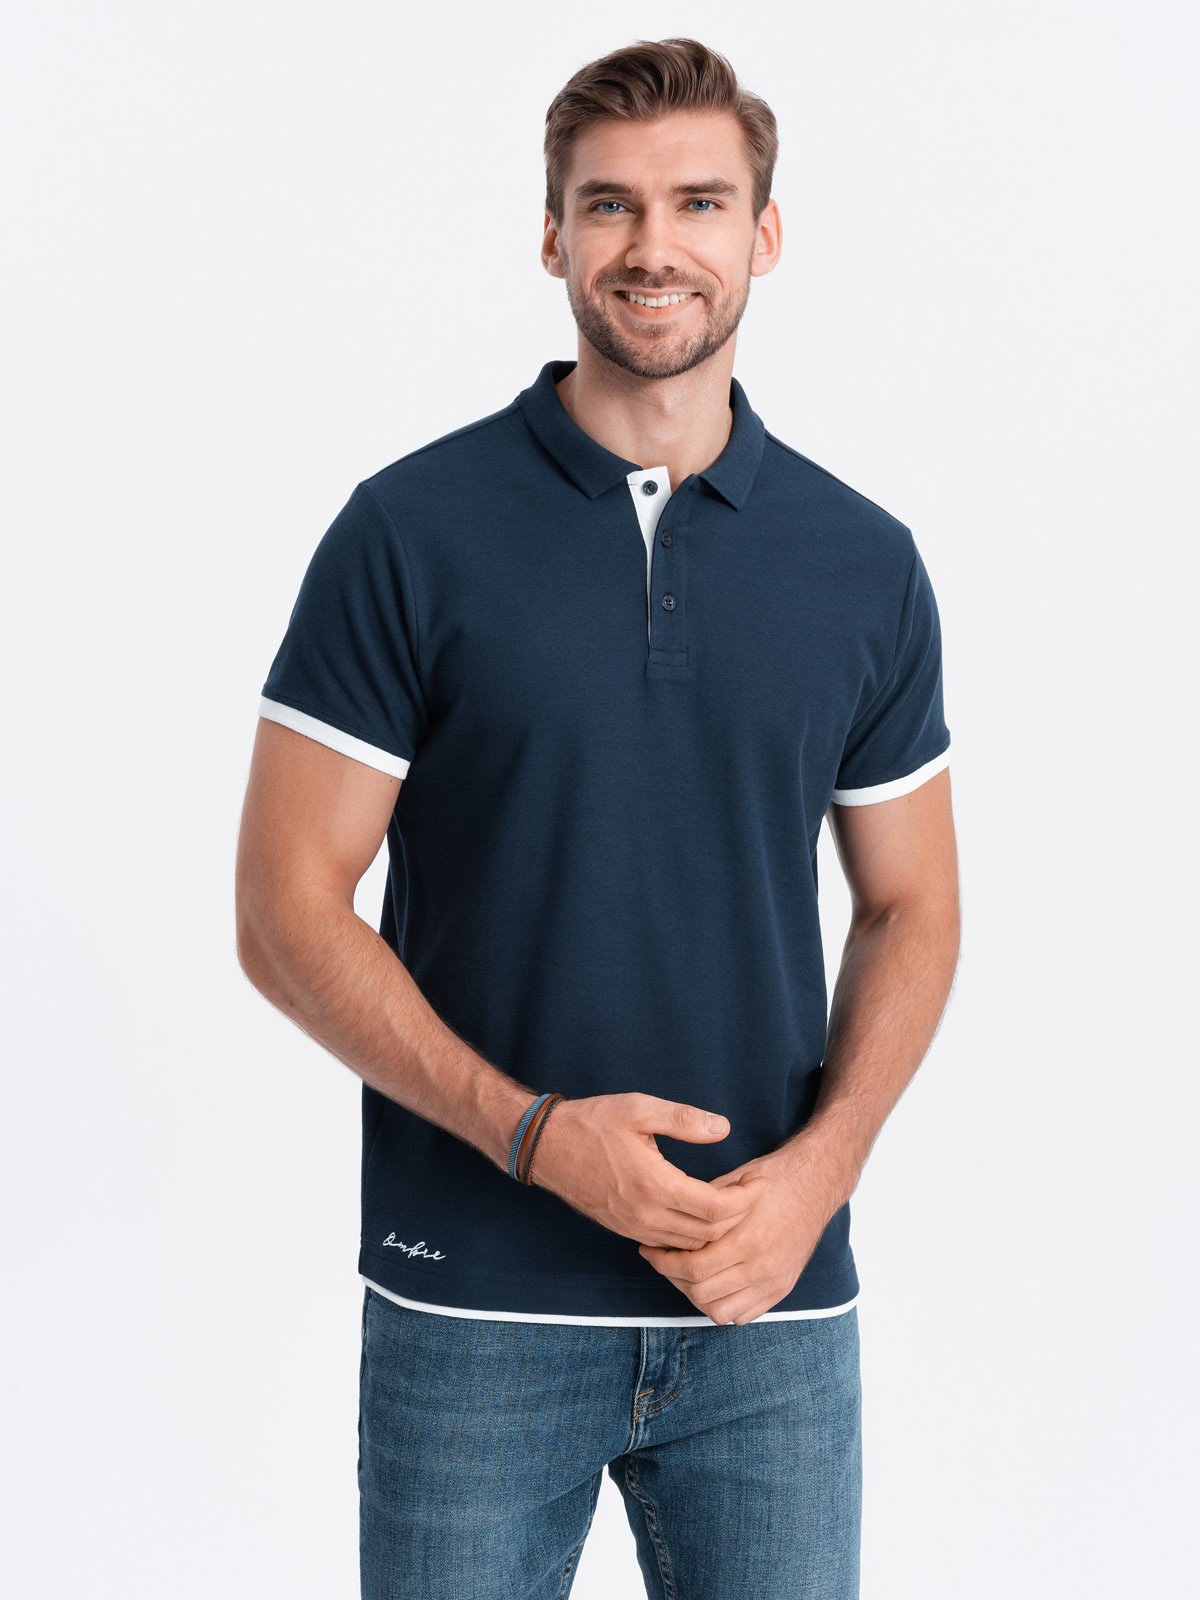 Men's cotton polo shirt - navy blue V4 OM-POSS V4 OM-POSS - 0113